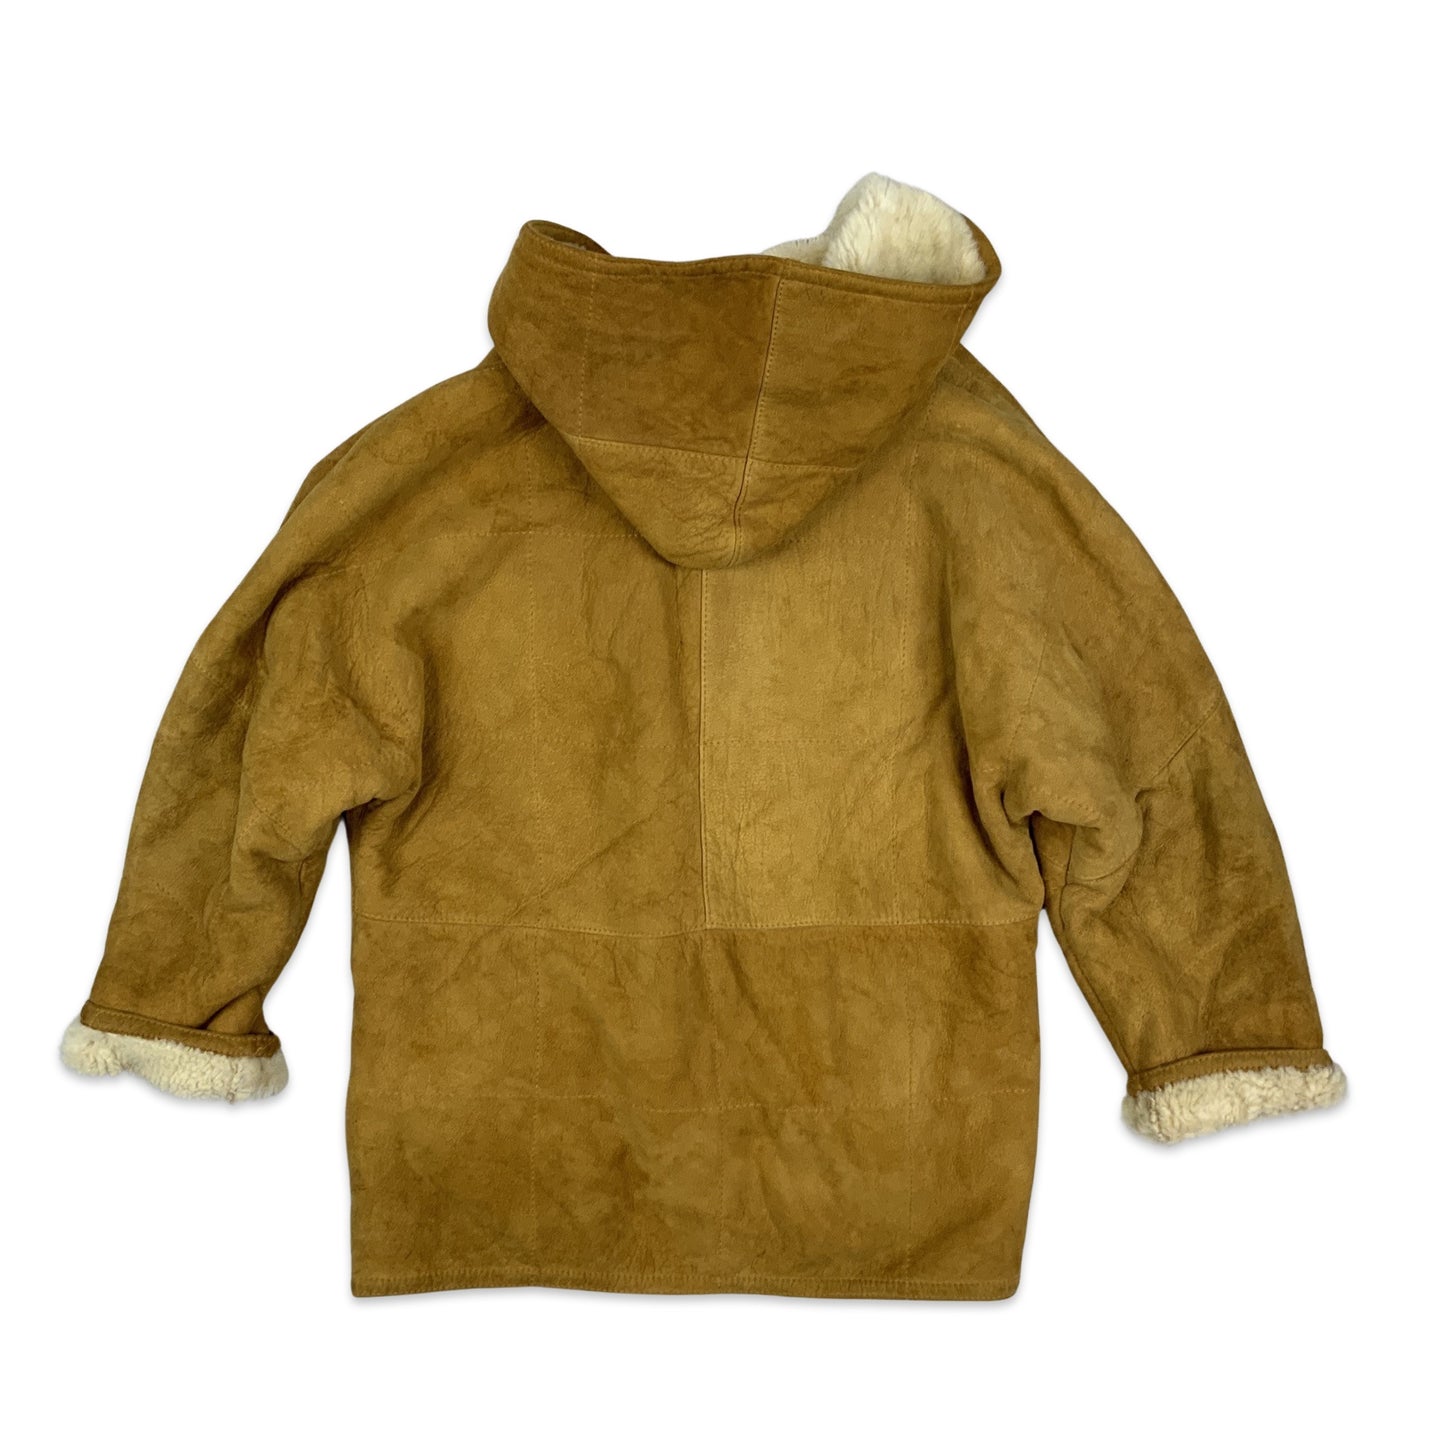 Vintage Tan Hooded Suede Shearling Coat 14 16